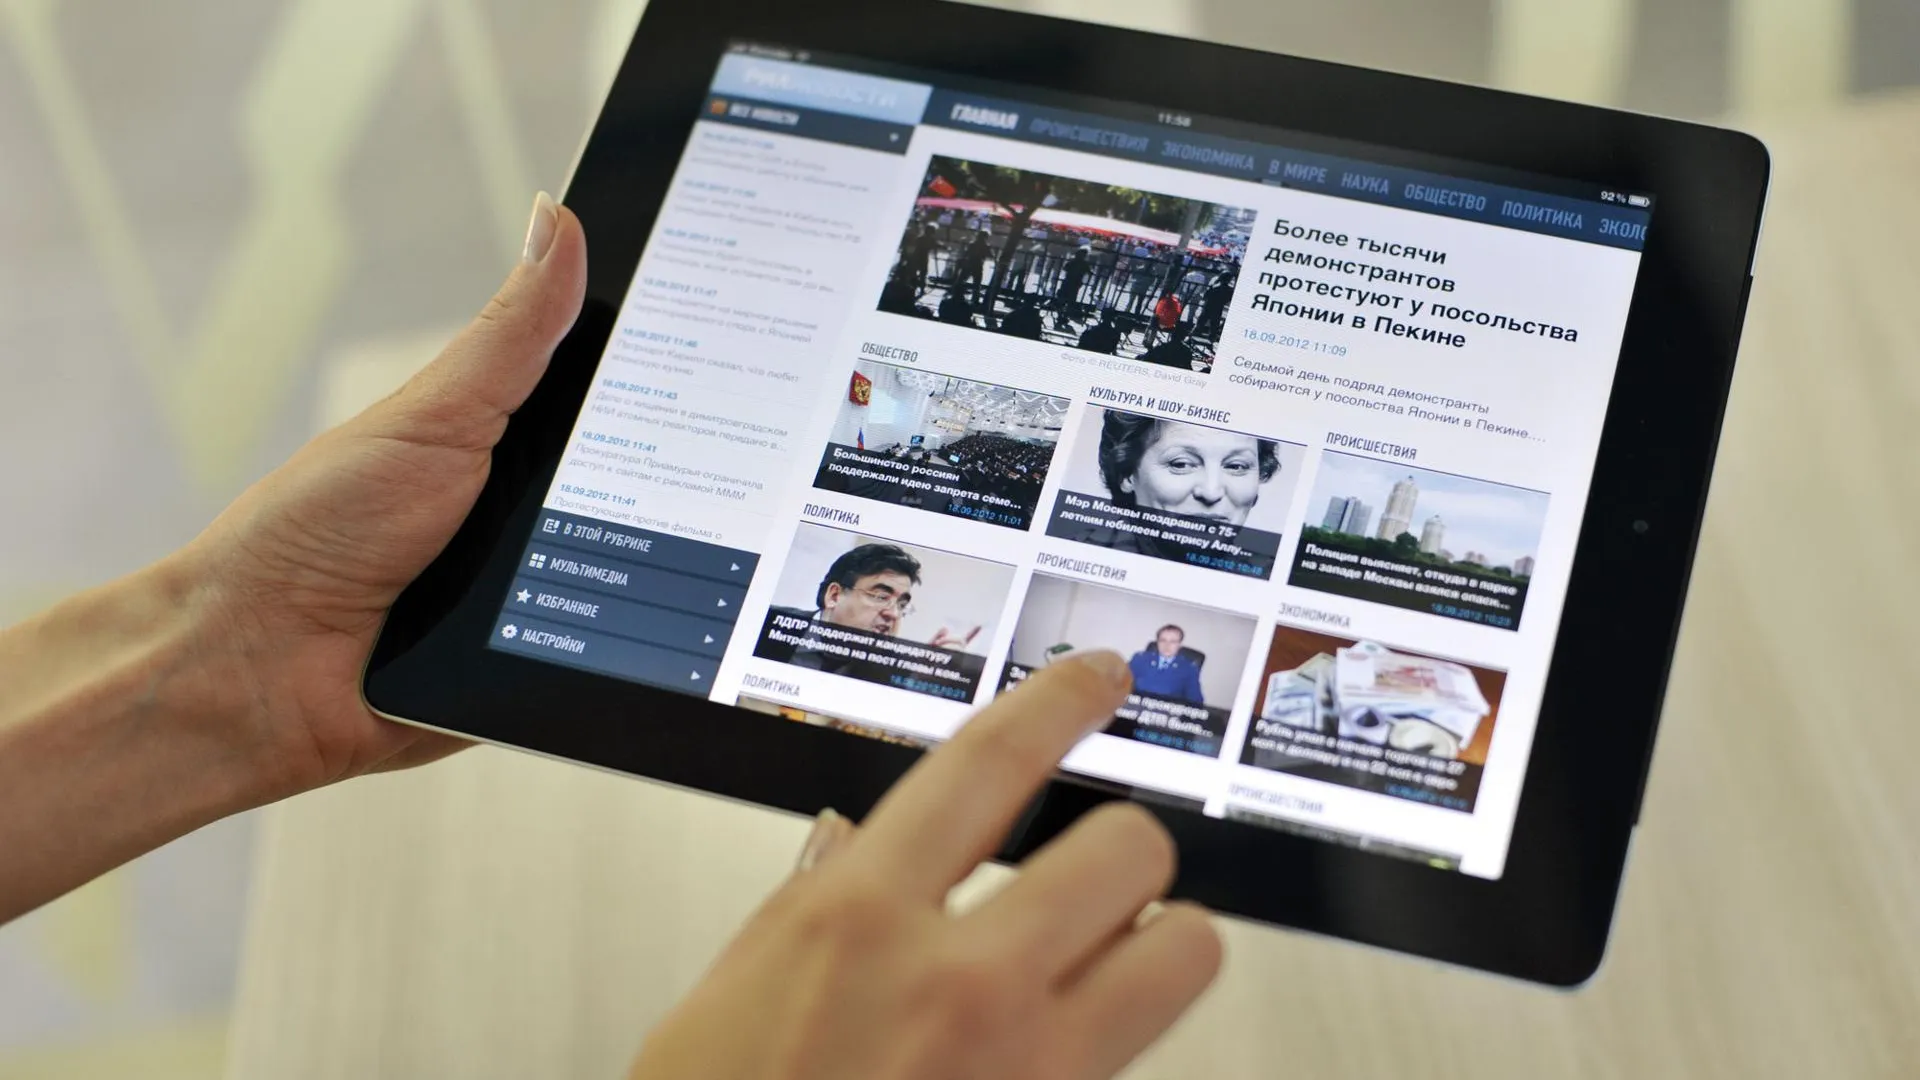 Мособлдума намерена потратить 3 млн руб на покупку 80 планшетов iPad 3